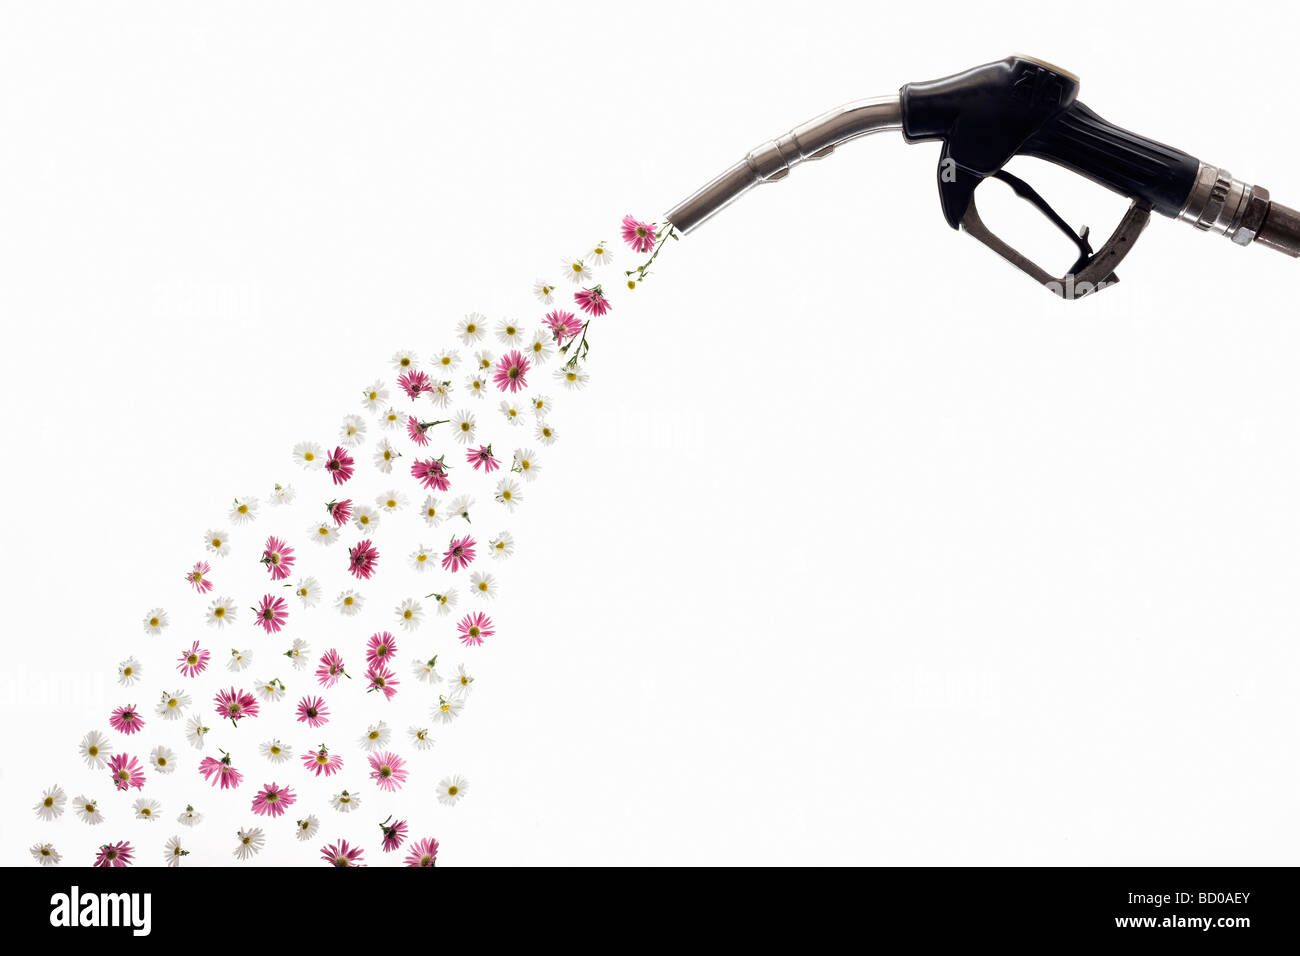 Una pompa di benzina il rilascio di fiori Foto Stock